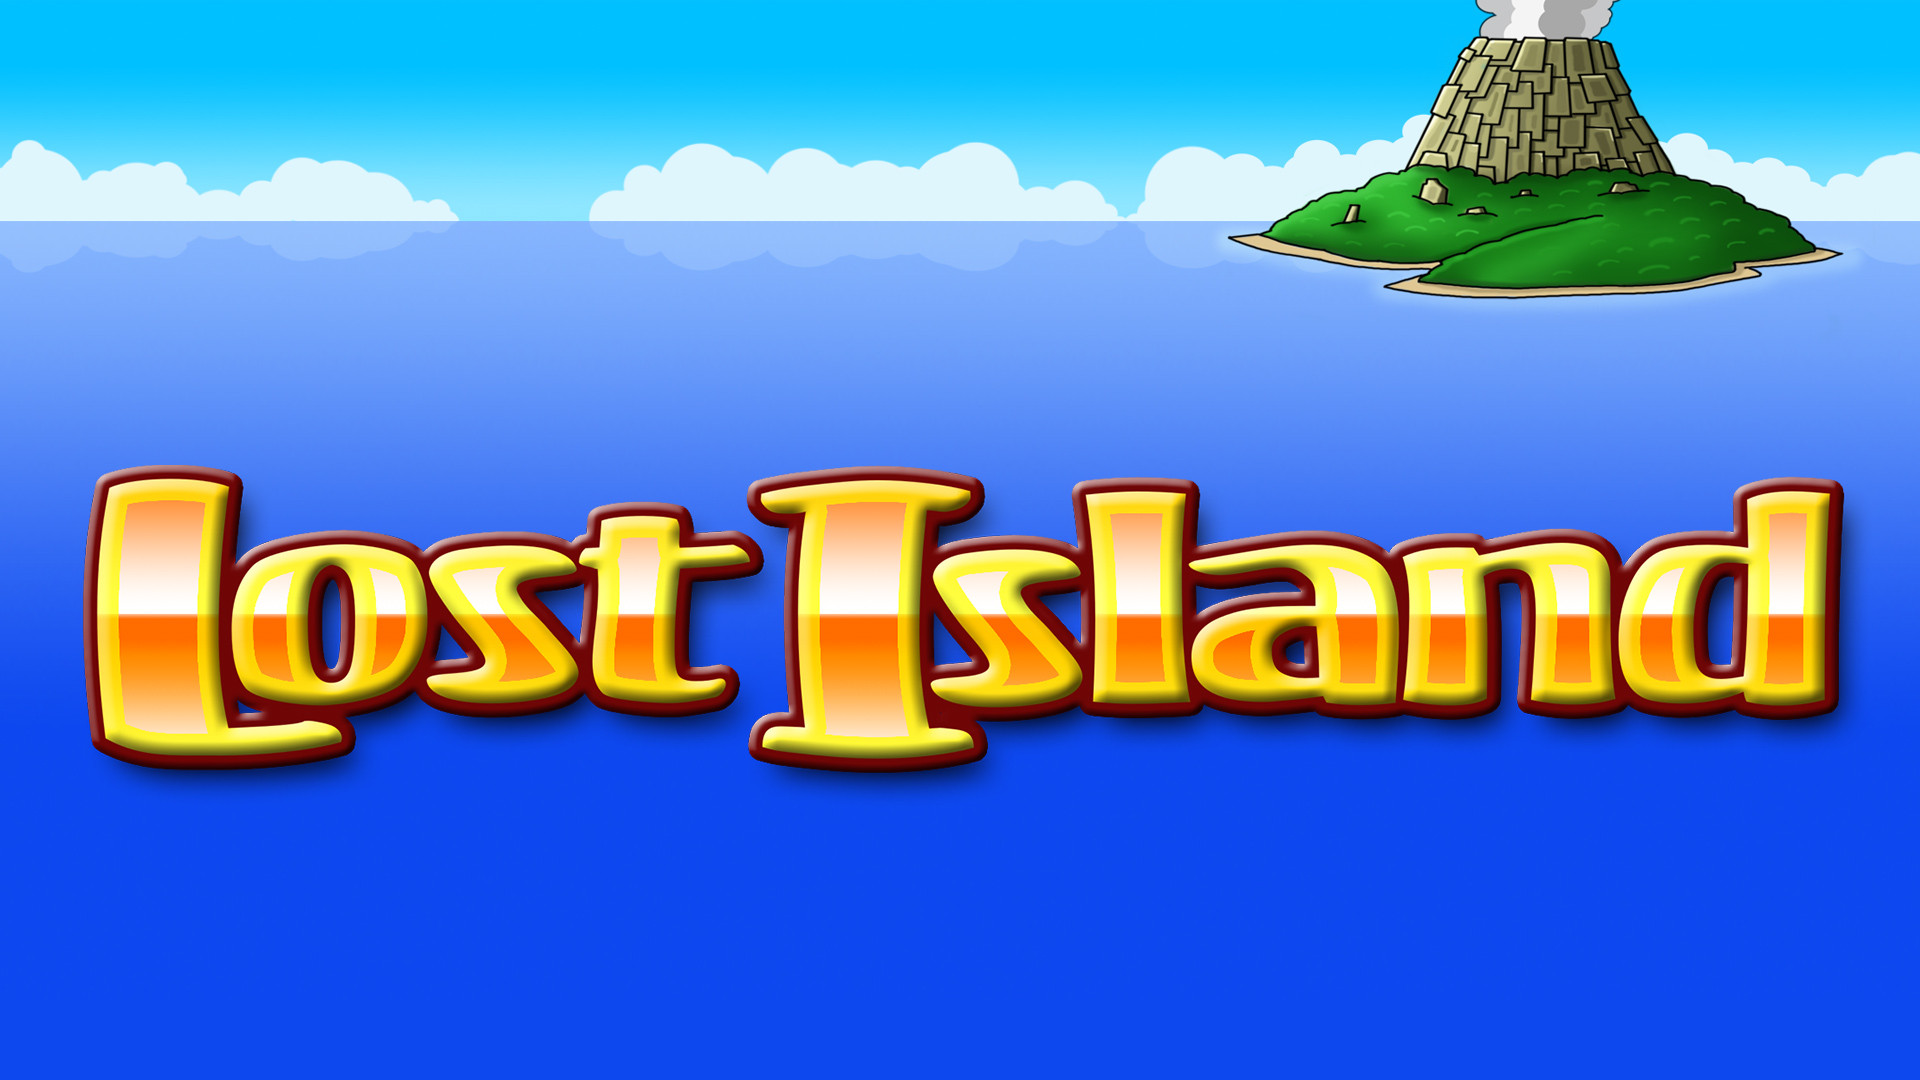 Lost Island Eyecon